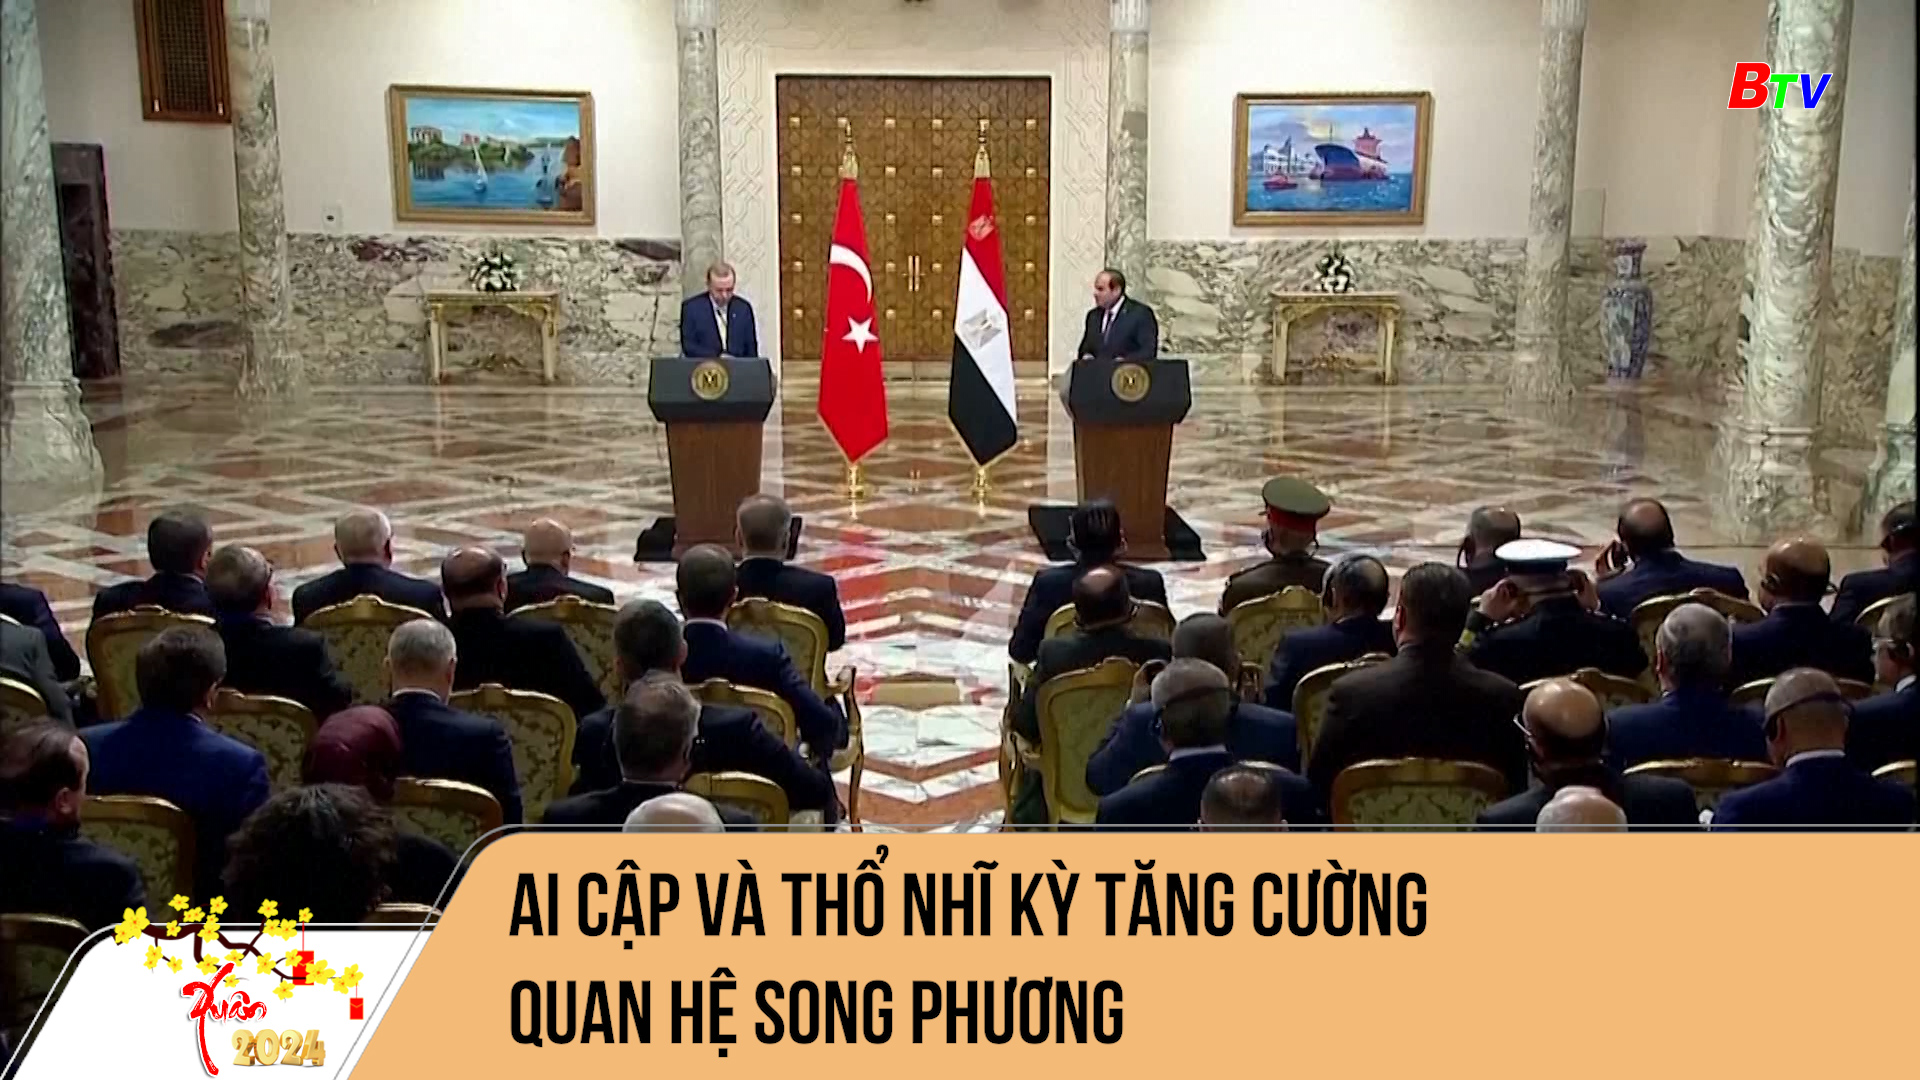 Ai Cập và Thổ Nhĩ Kỳ tăng cường quan hệ song phương